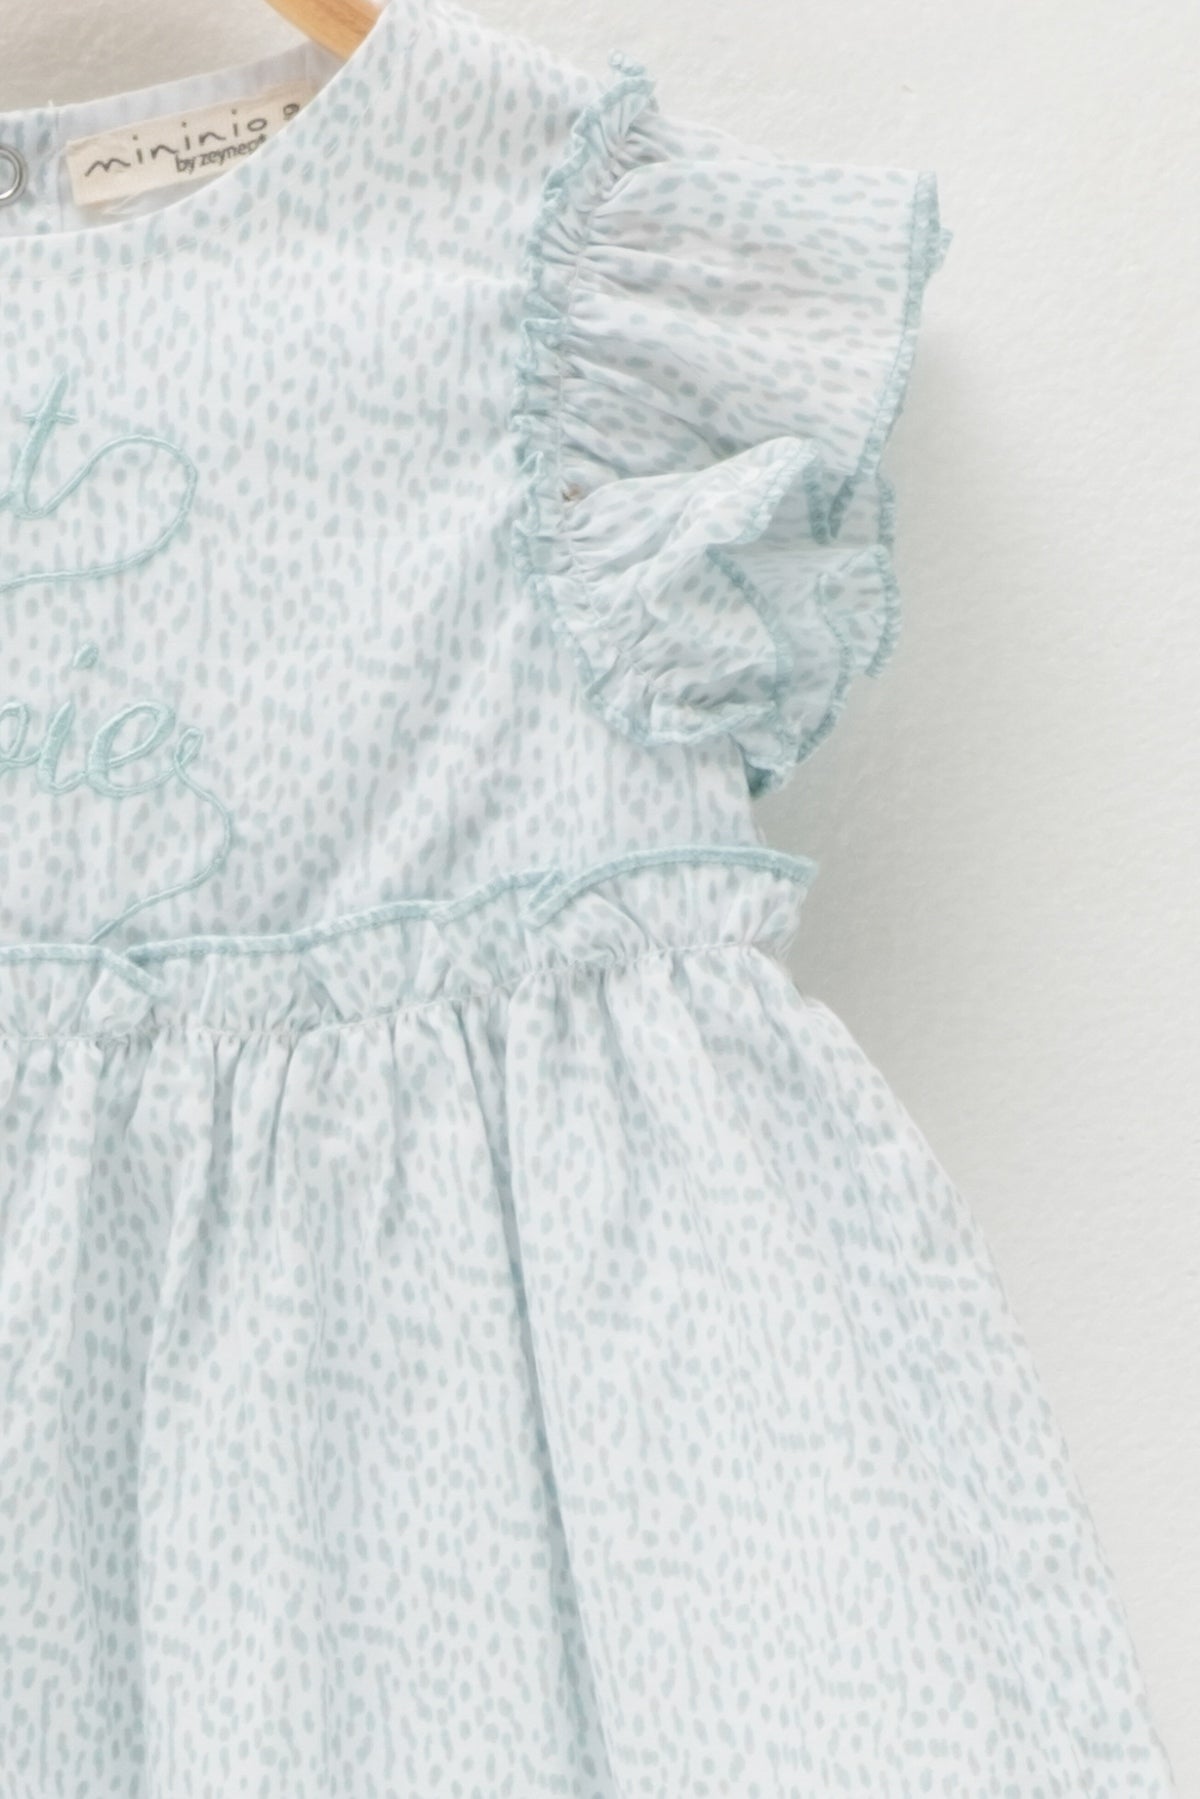 Kız Bebek Cest La Vie Kolları Fırfırlı Mint Elbise (6ay-4yaş)-1